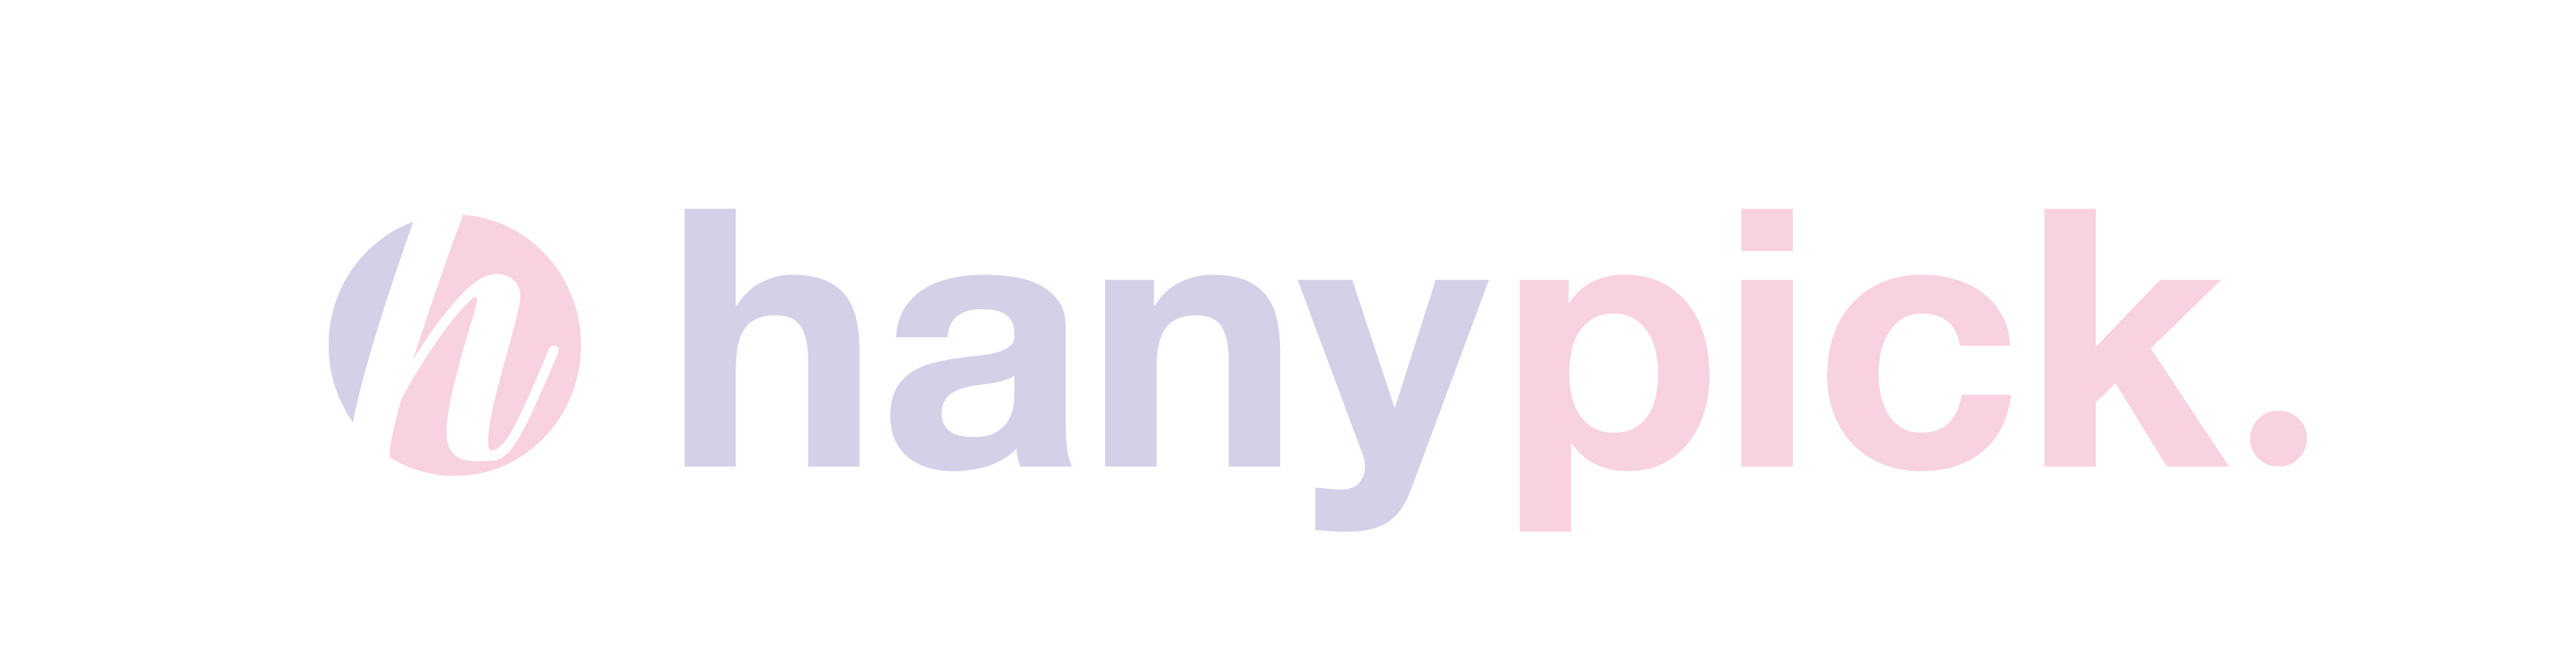 hanypick